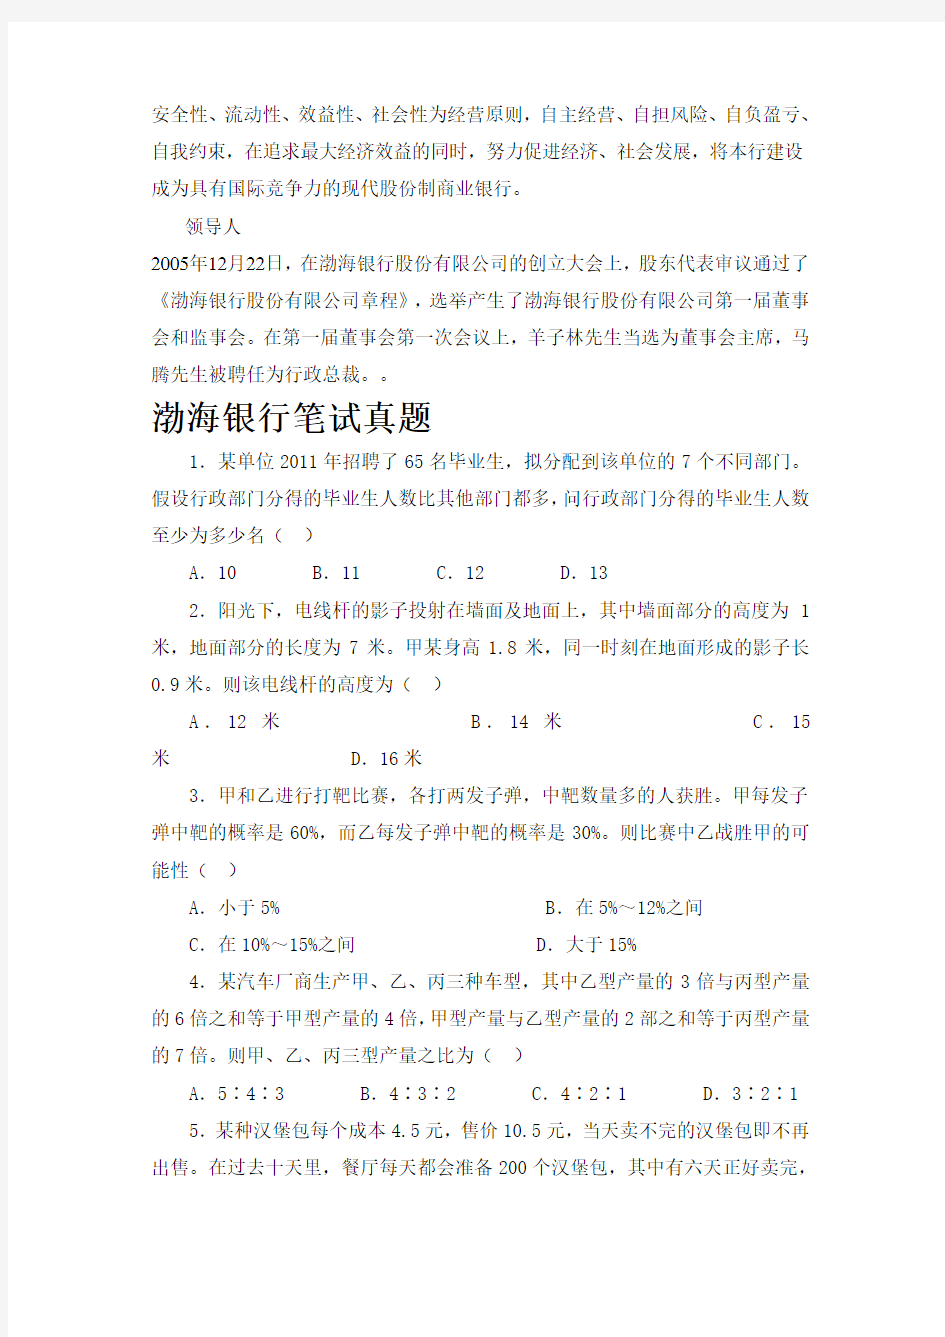 渤海银行招聘考试题笔试主要内容题型题目试卷历年考试真题